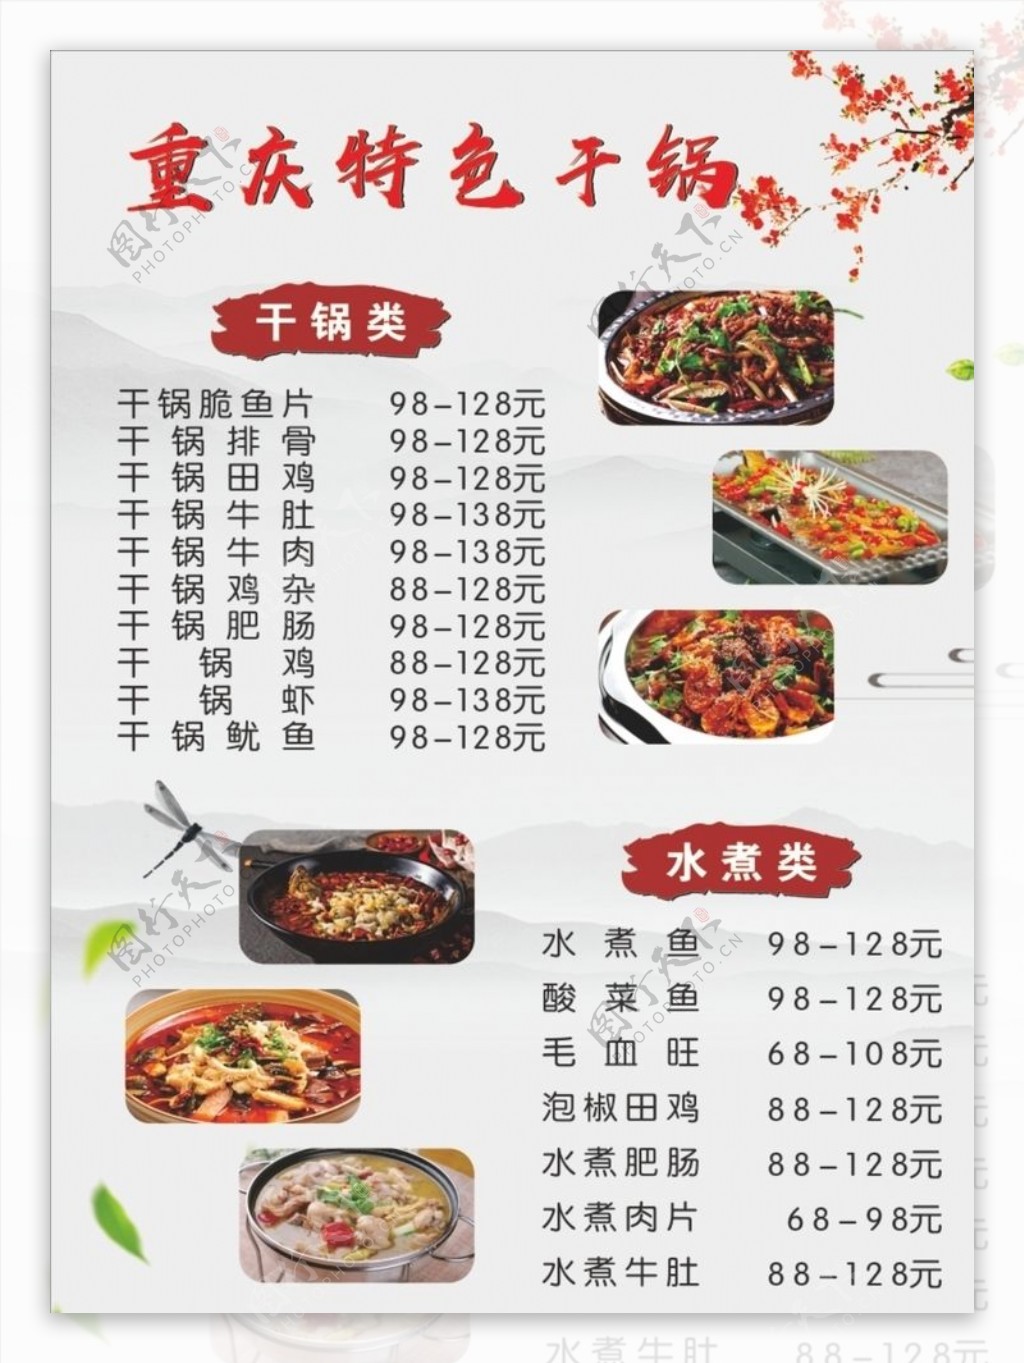 重庆特色菜菜单